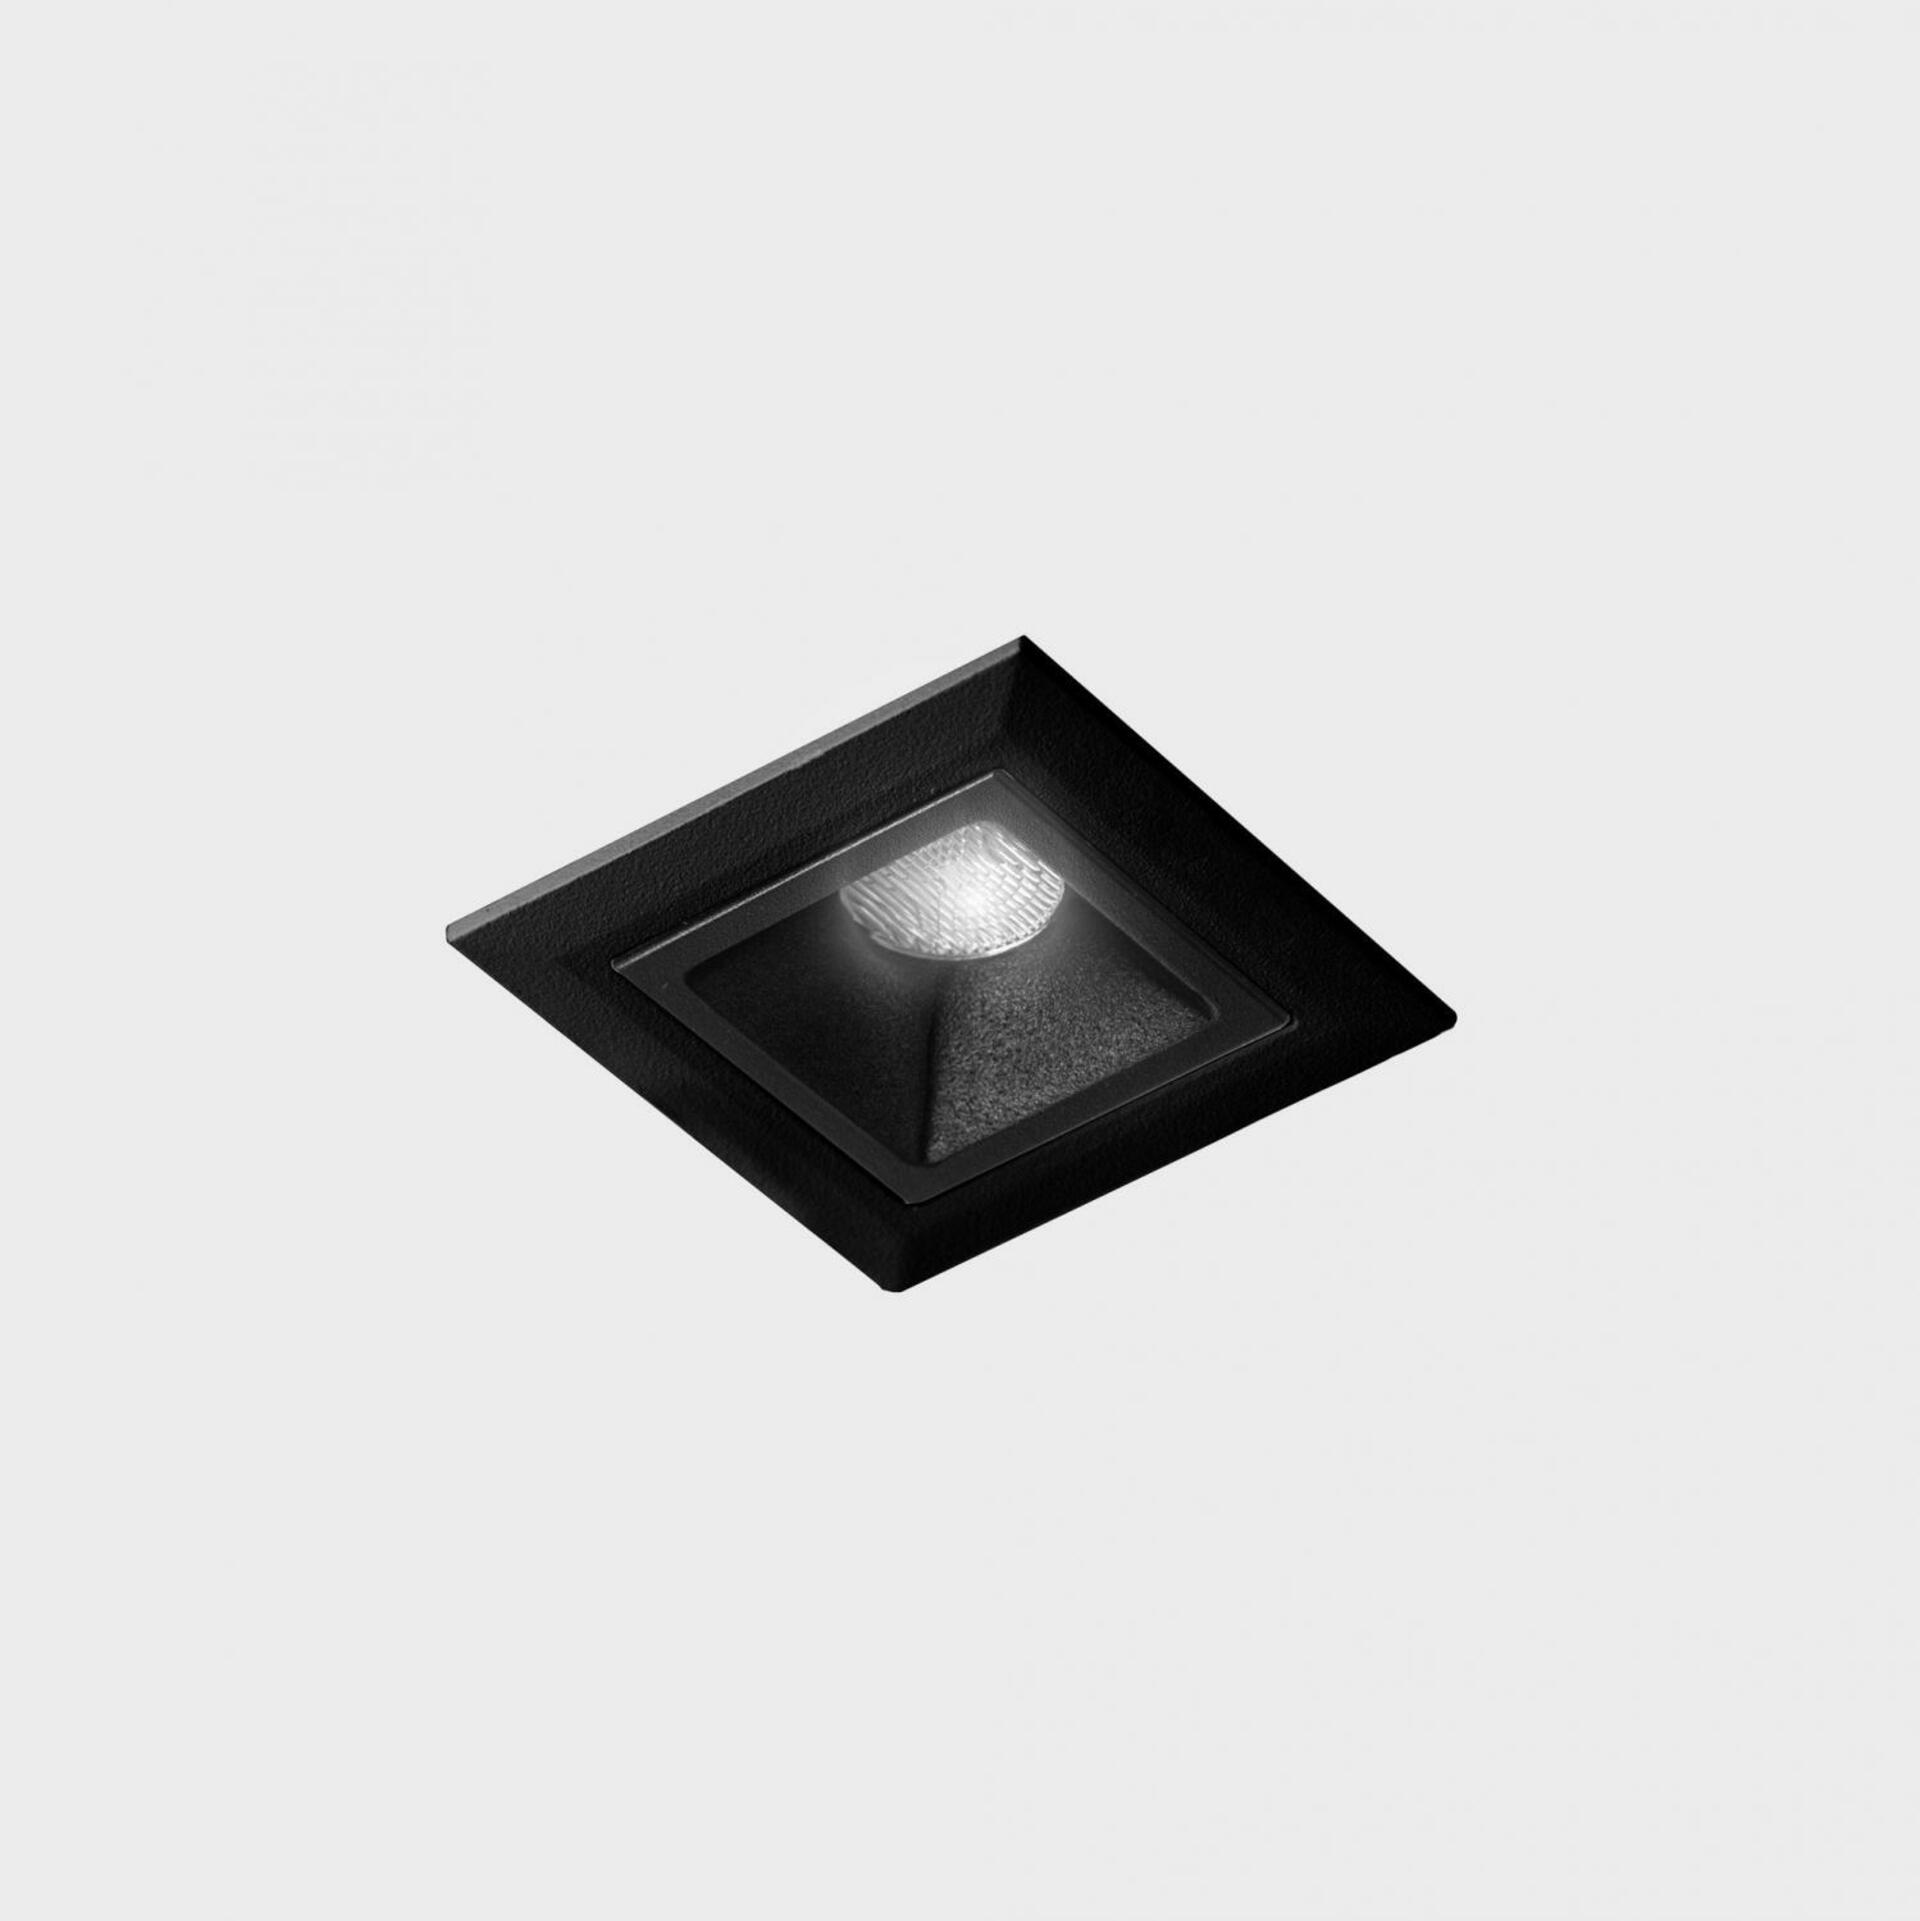 KOHL LIGHTING KOHL-Lighting NSES zapuštěné svítidlo s rámečkem 45x45 mm černá 2 W CRI 90 2700K PUSH